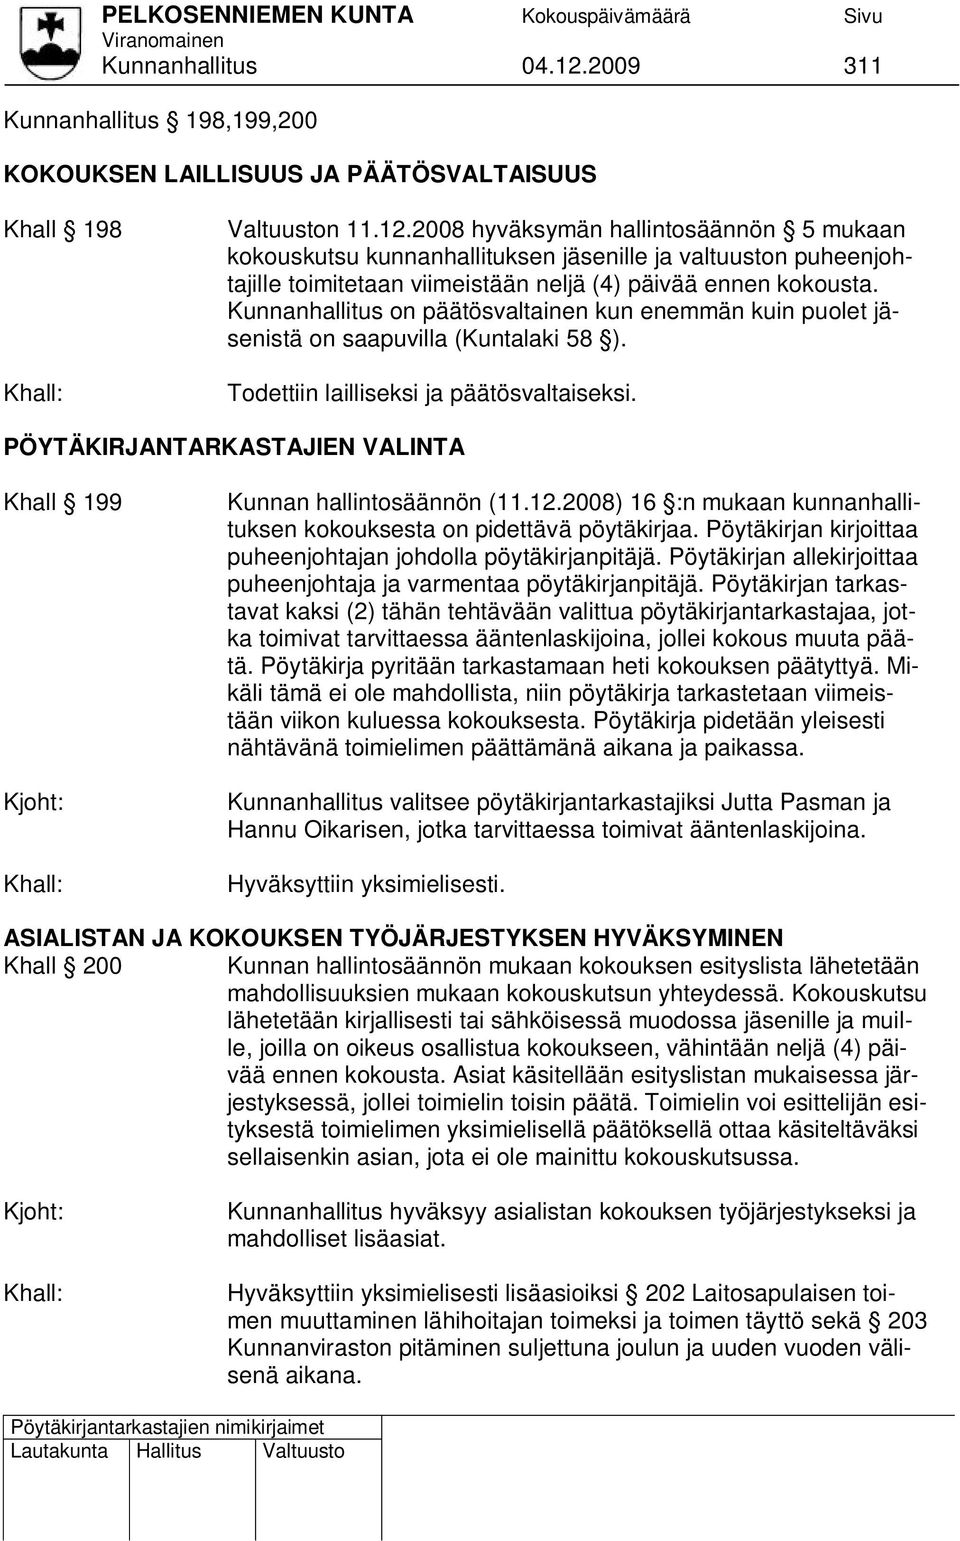 PÖYTÄKIRJANTARKASTAJIEN VALINTA Khall 199 Kunnan hallintosäännön (11.12.2008) 16 :n mukaan kunnanhallituksen kokouksesta on pidettävä pöytäkirjaa.